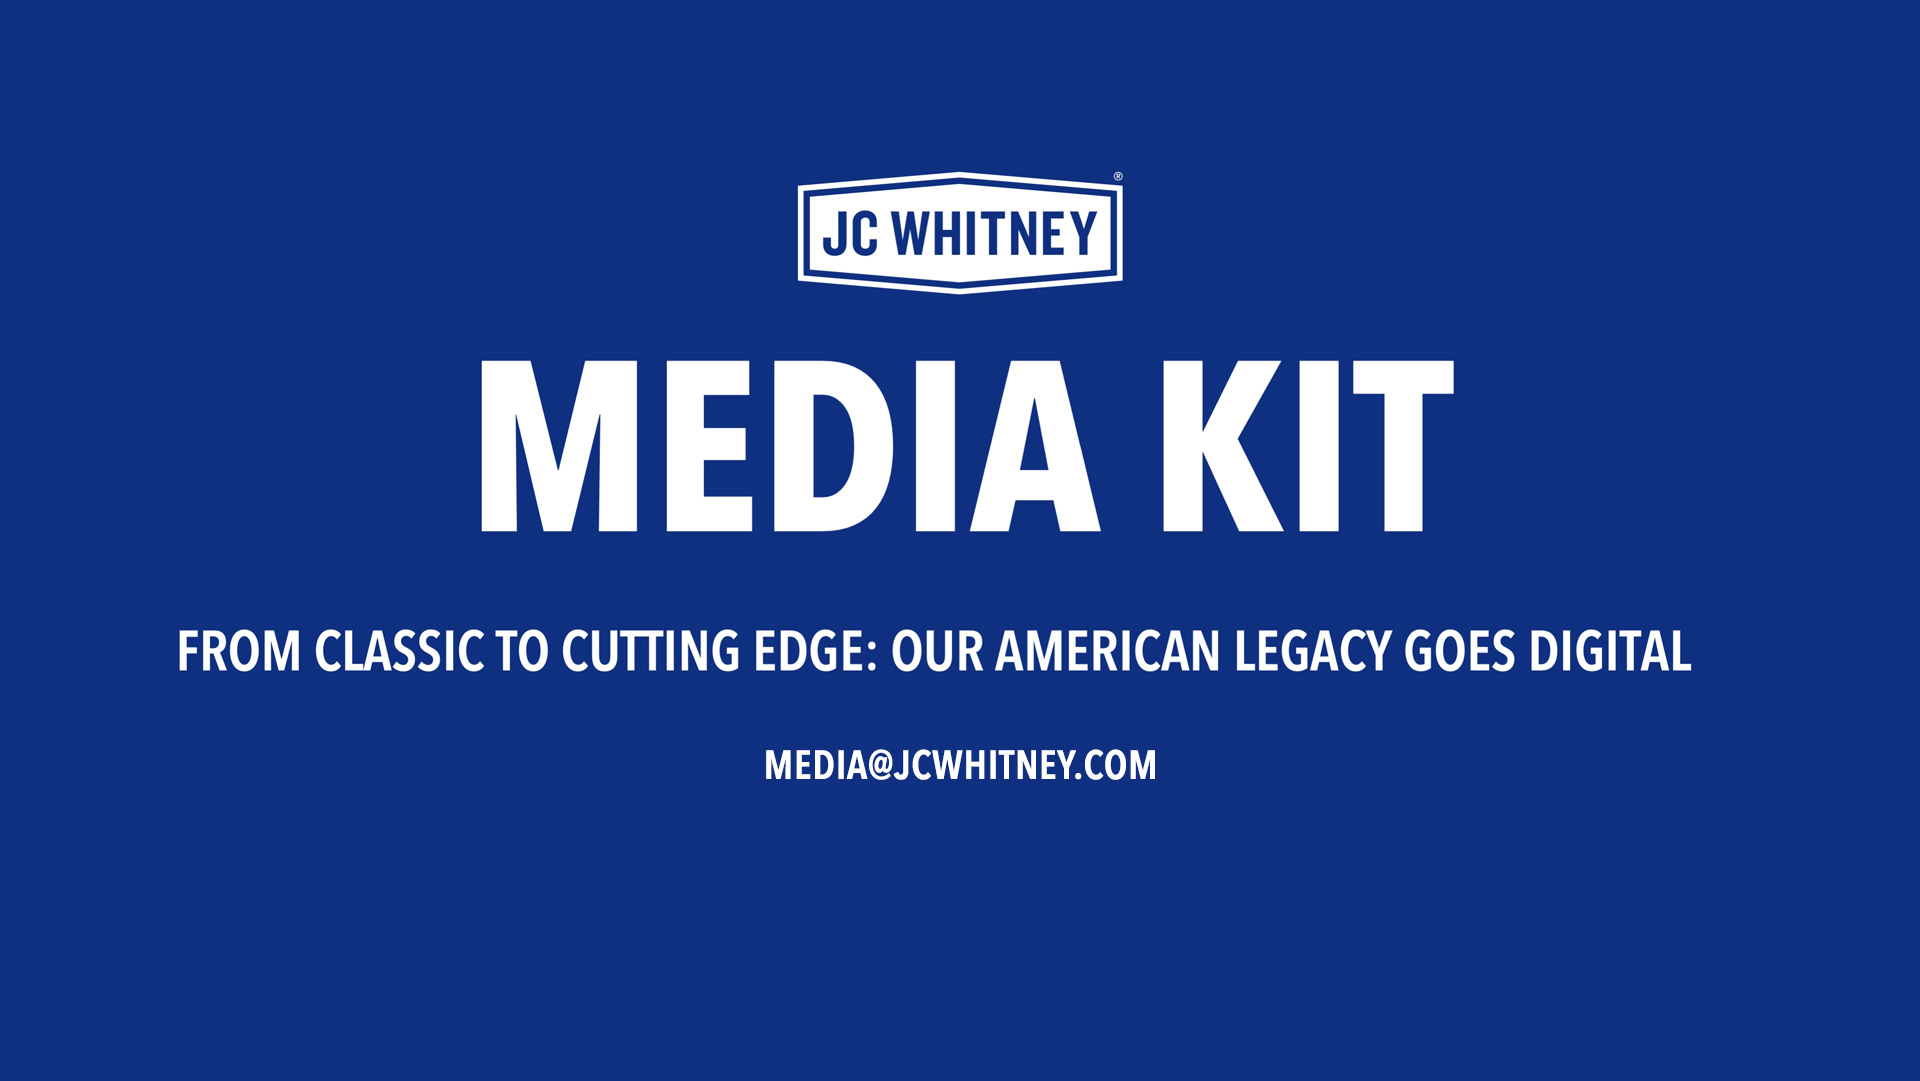 JC Whitney Media Kit